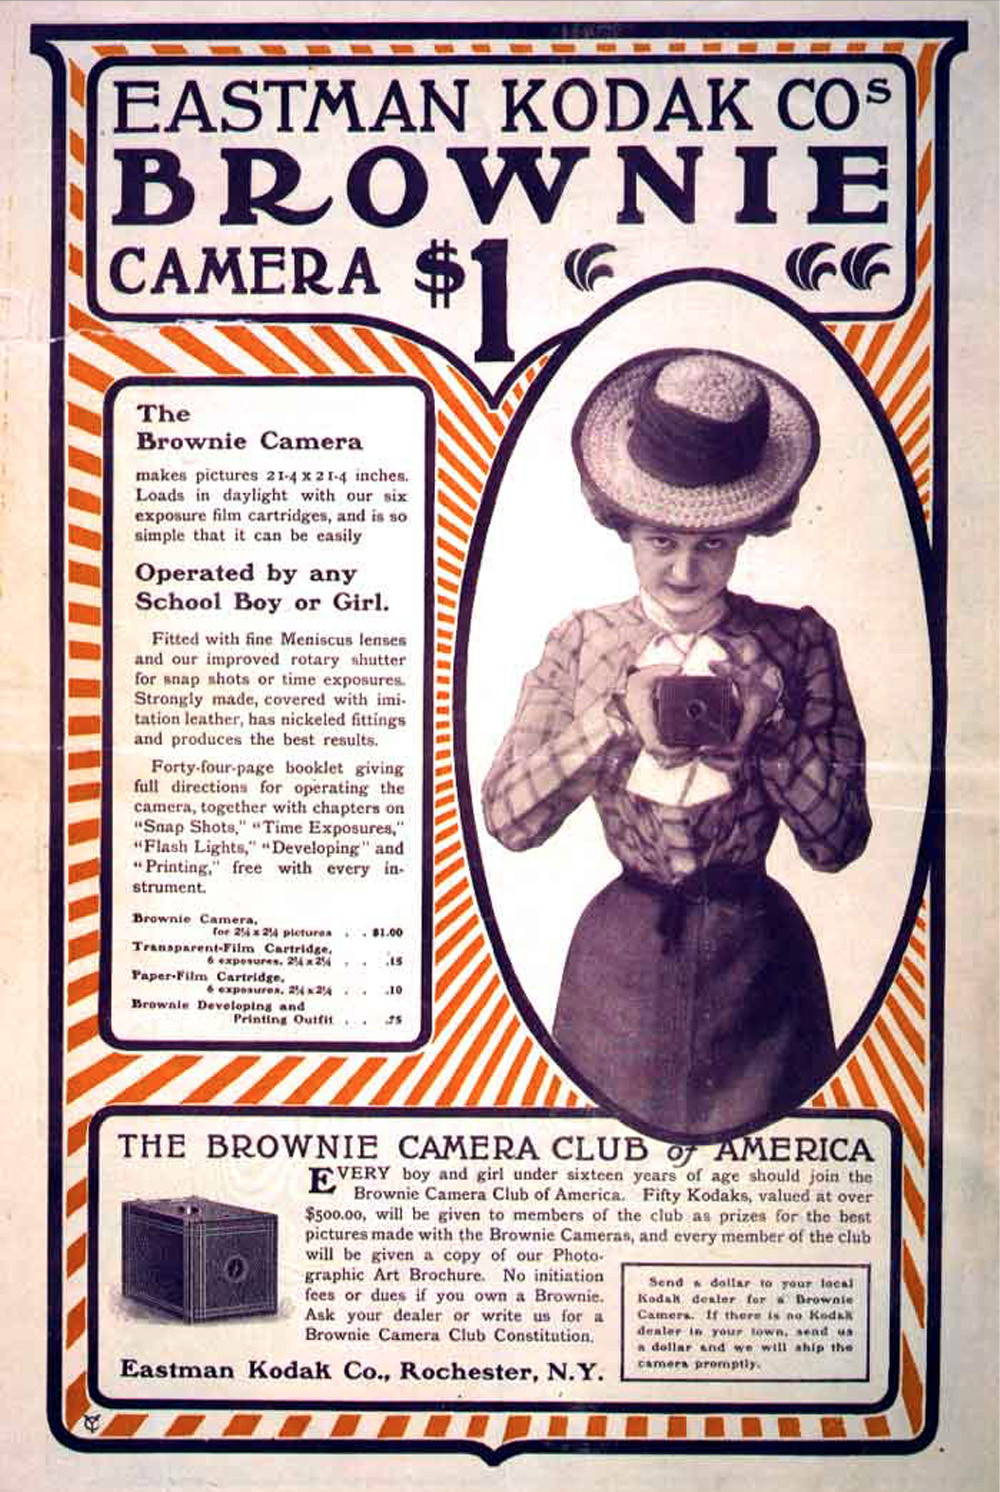 Early Eastman Kodak Advertisement from 1900